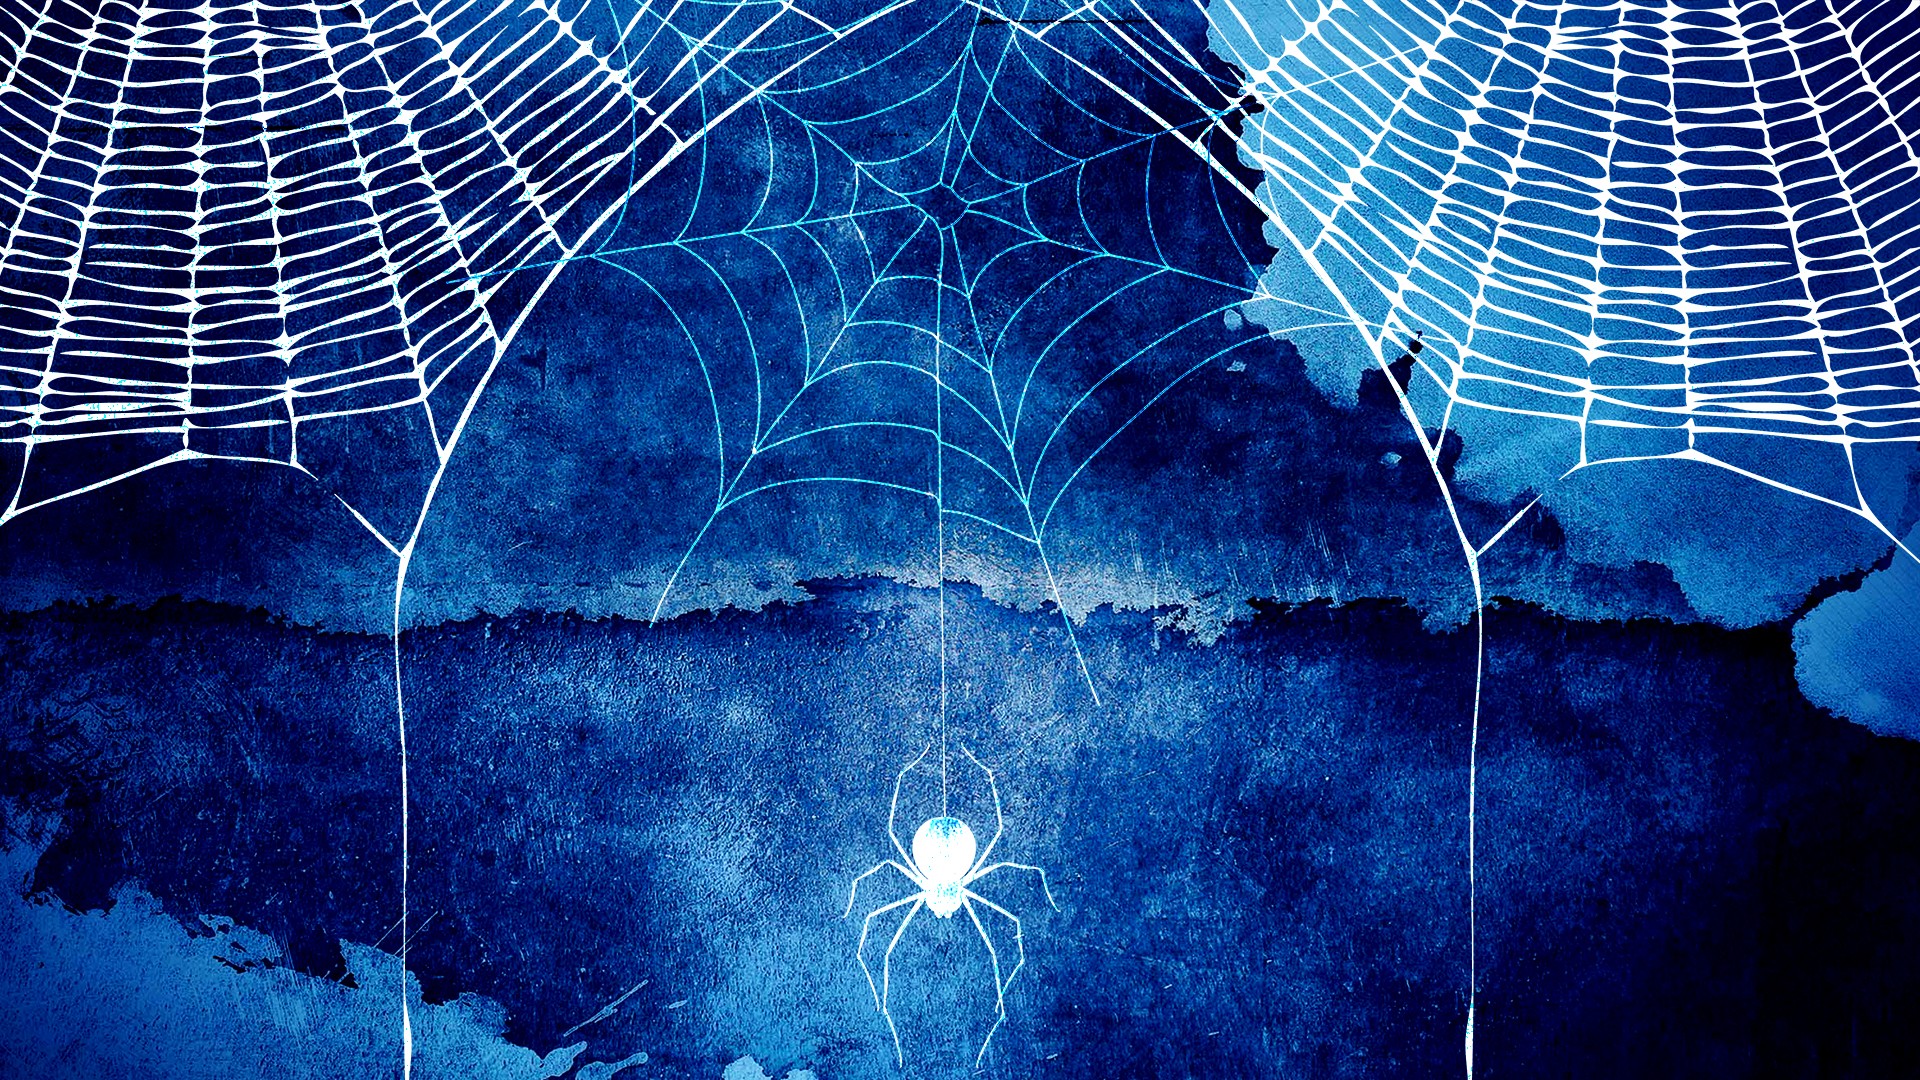 Halloween Spider Web Hd Background Wallpaper - Dark Blue Watercolor Hd  Background - 1920x1080 Wallpaper 